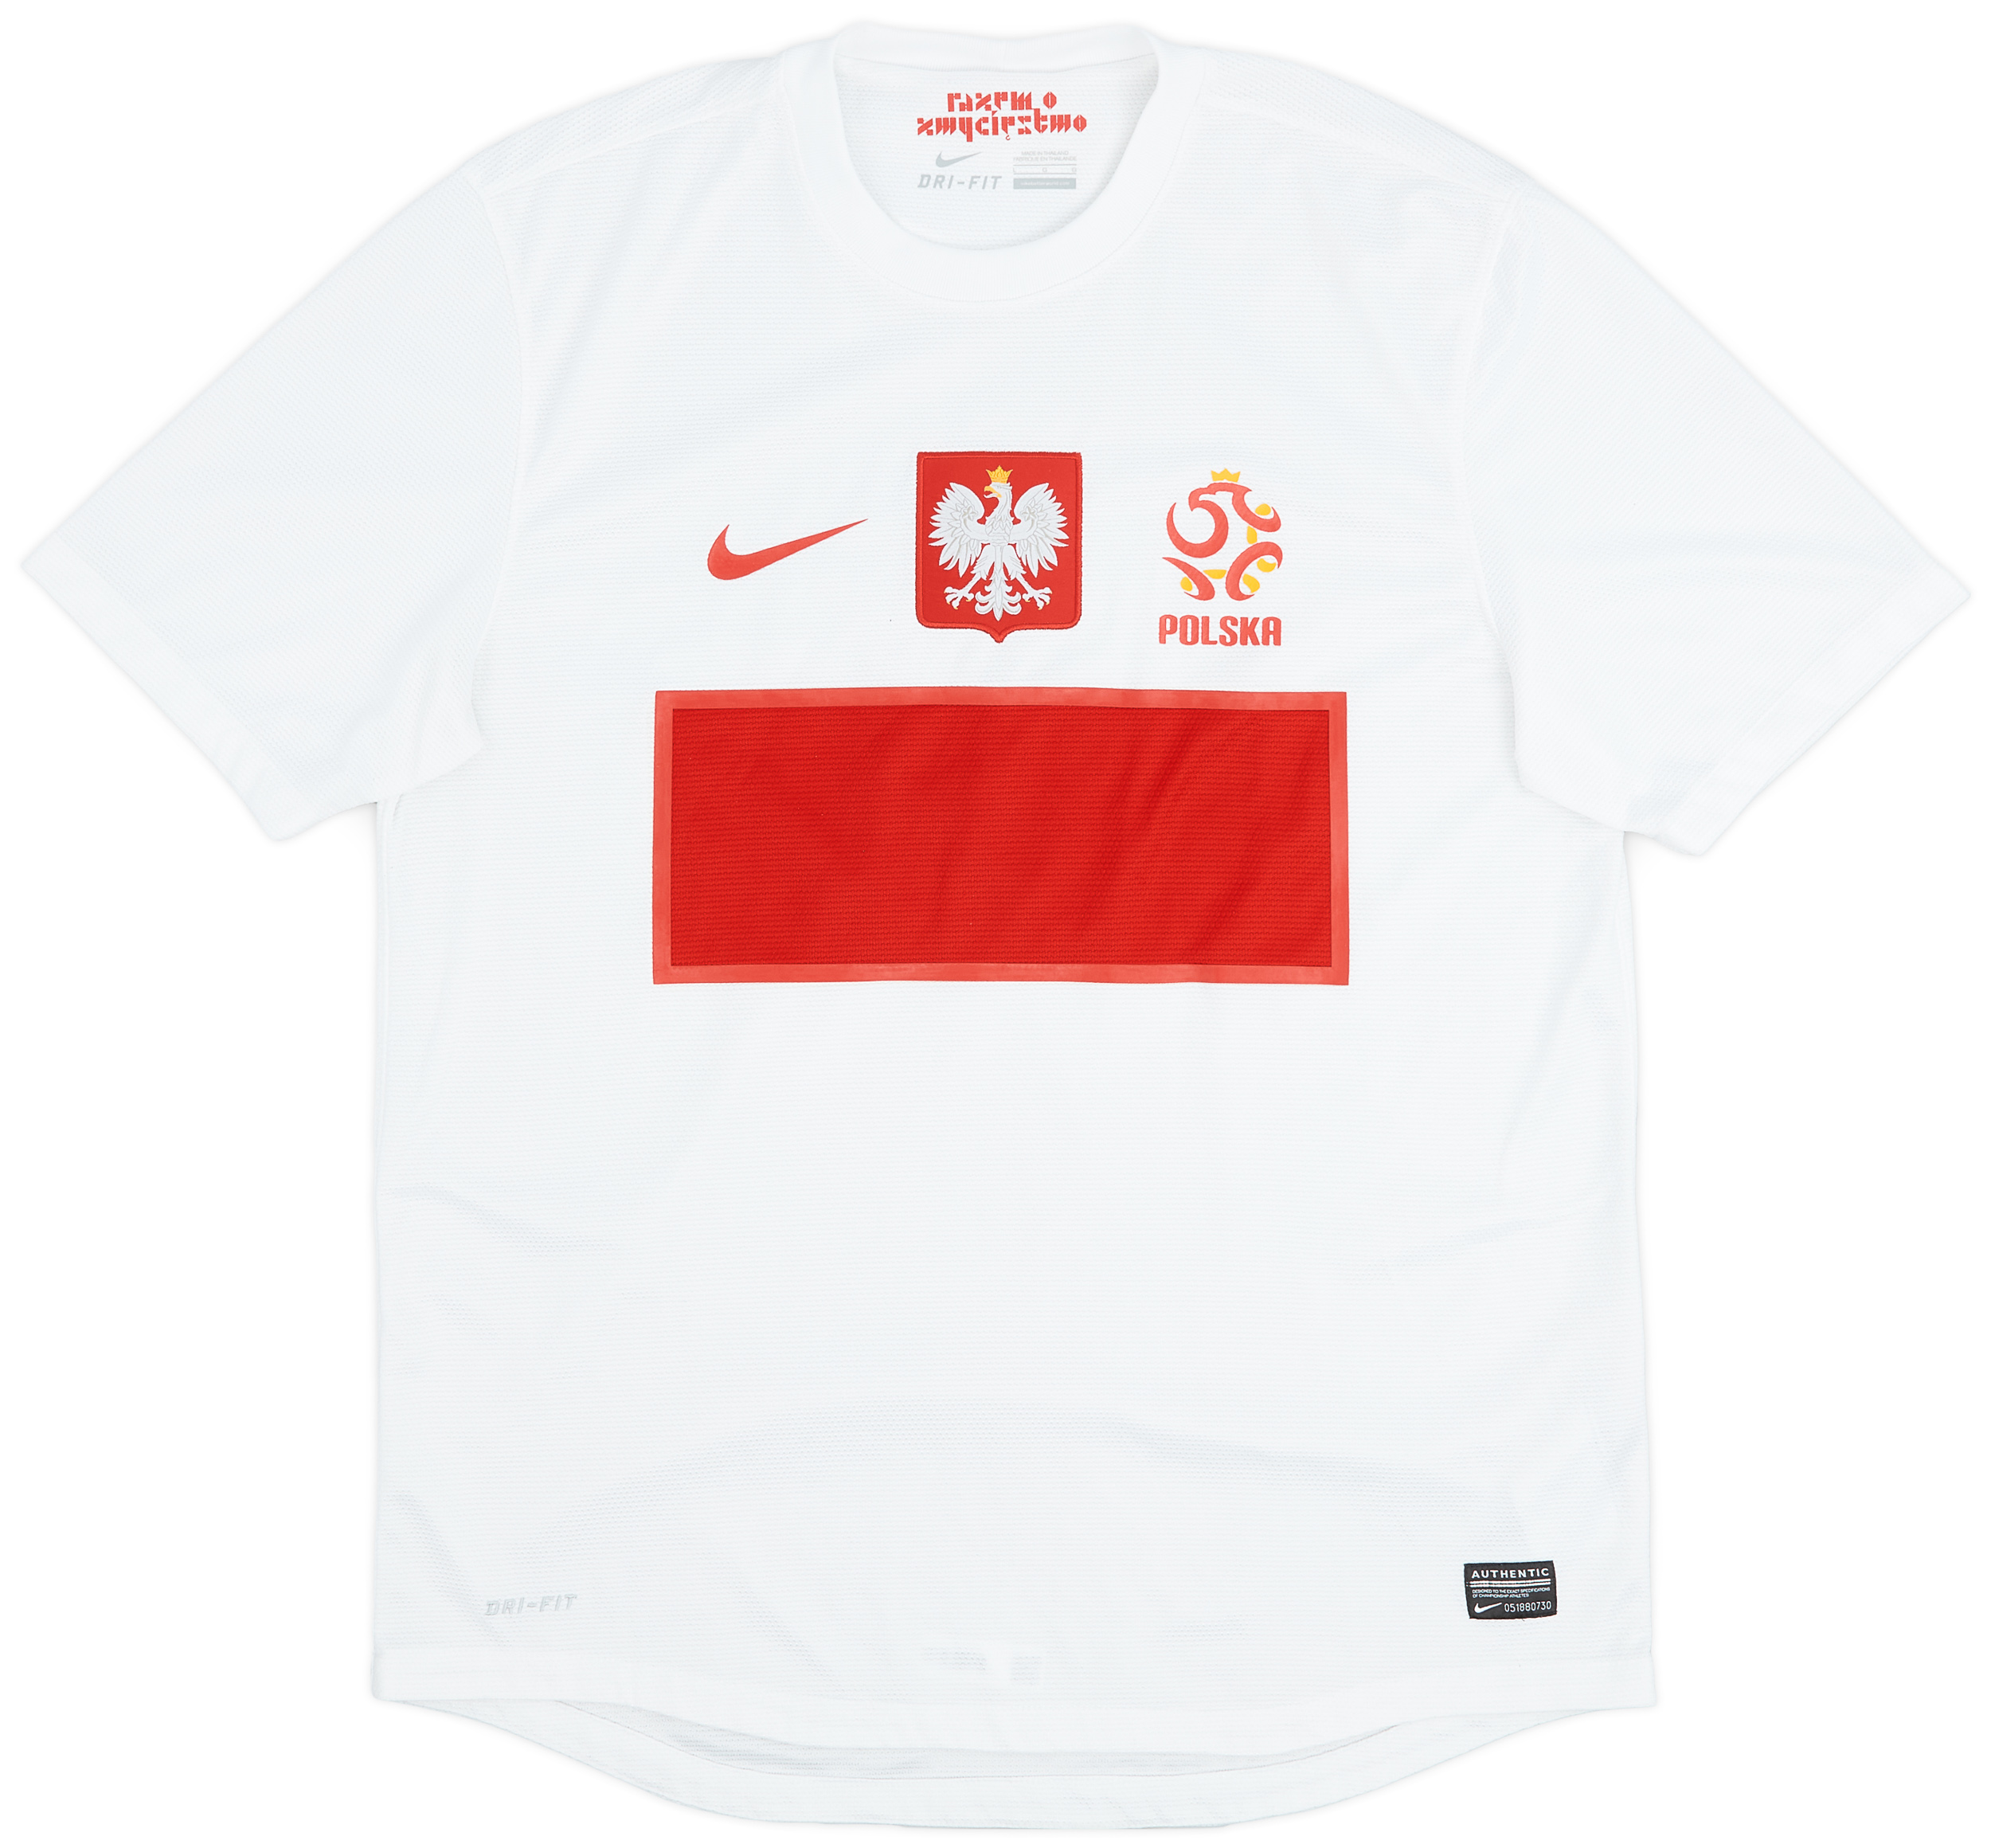 2012-13 Poland Home Shirt - 9/10 - ()